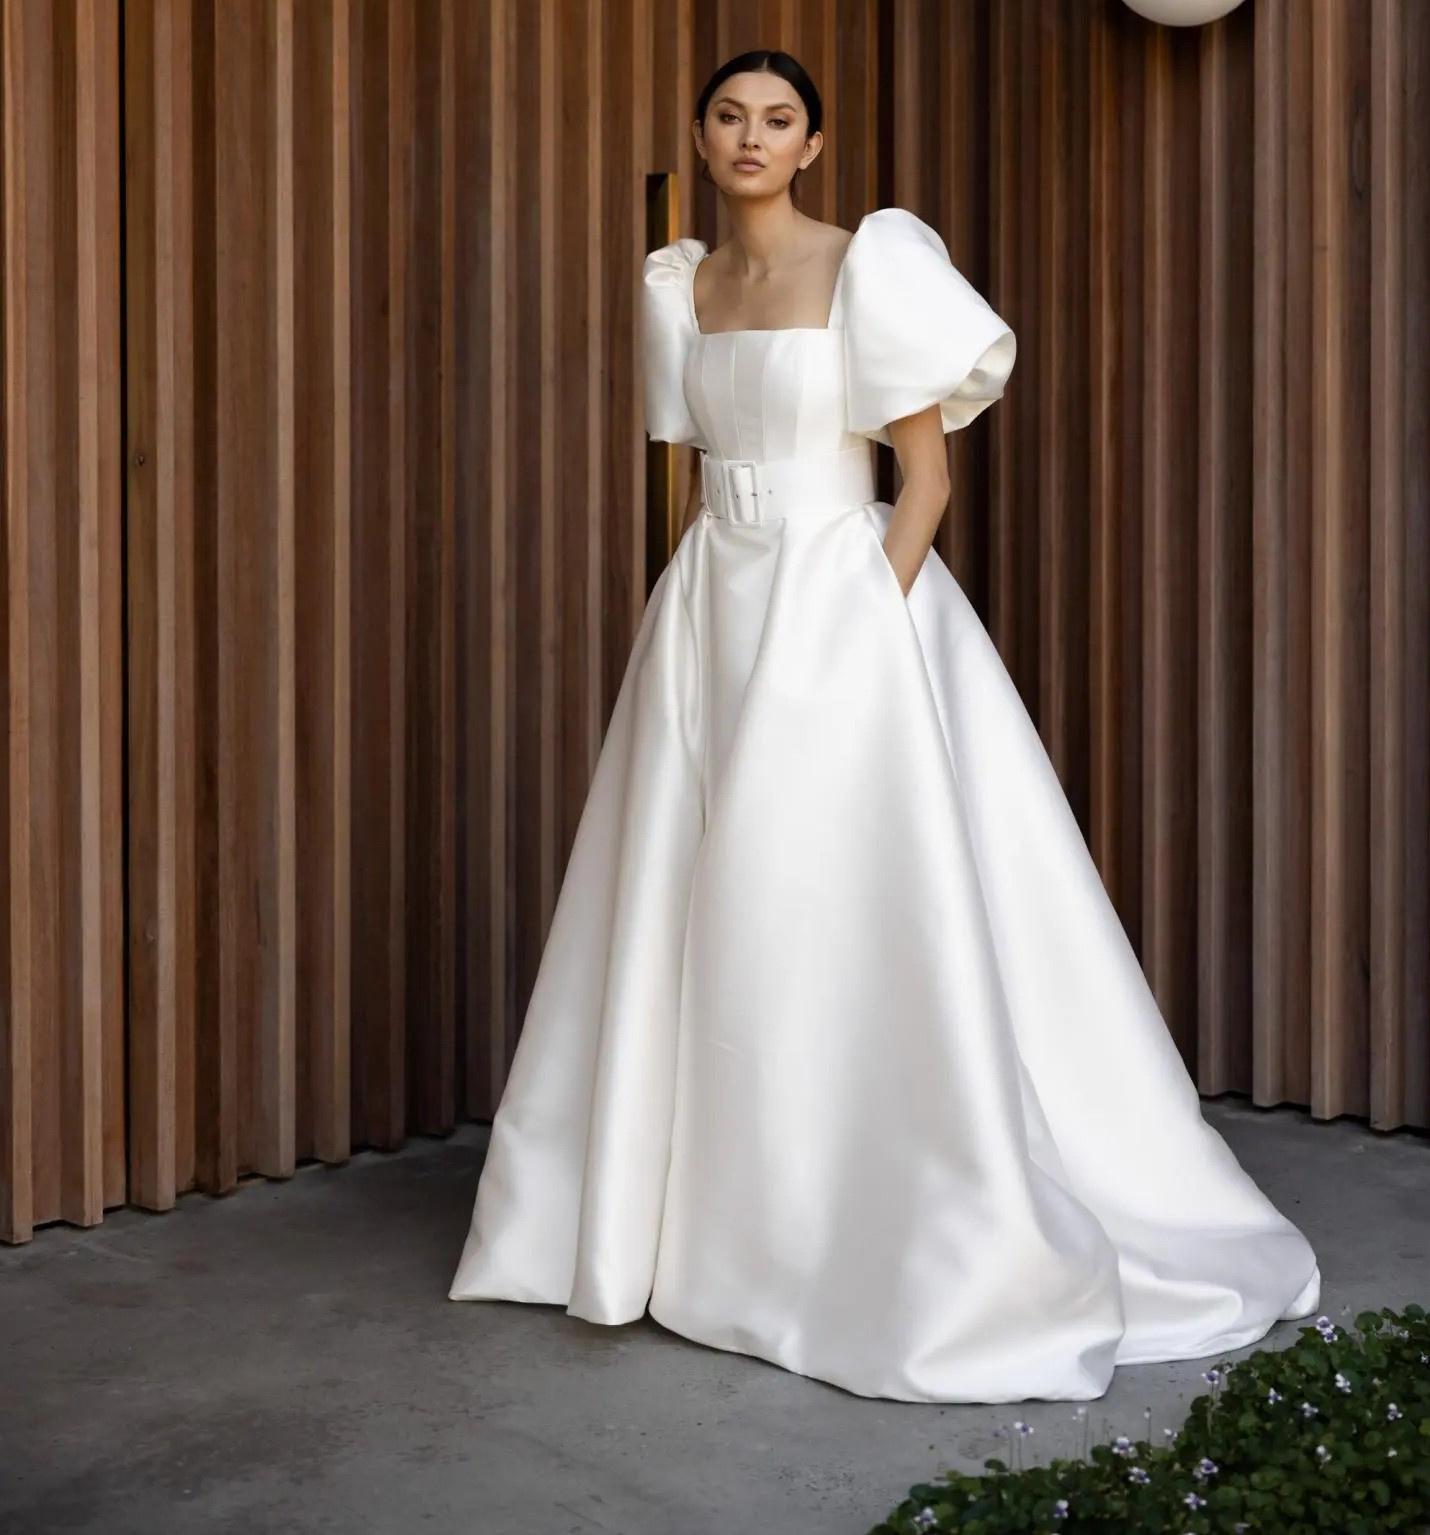 34 Puff Sleeve Wedding Dresses for Stylish Brides hitched.co.uk